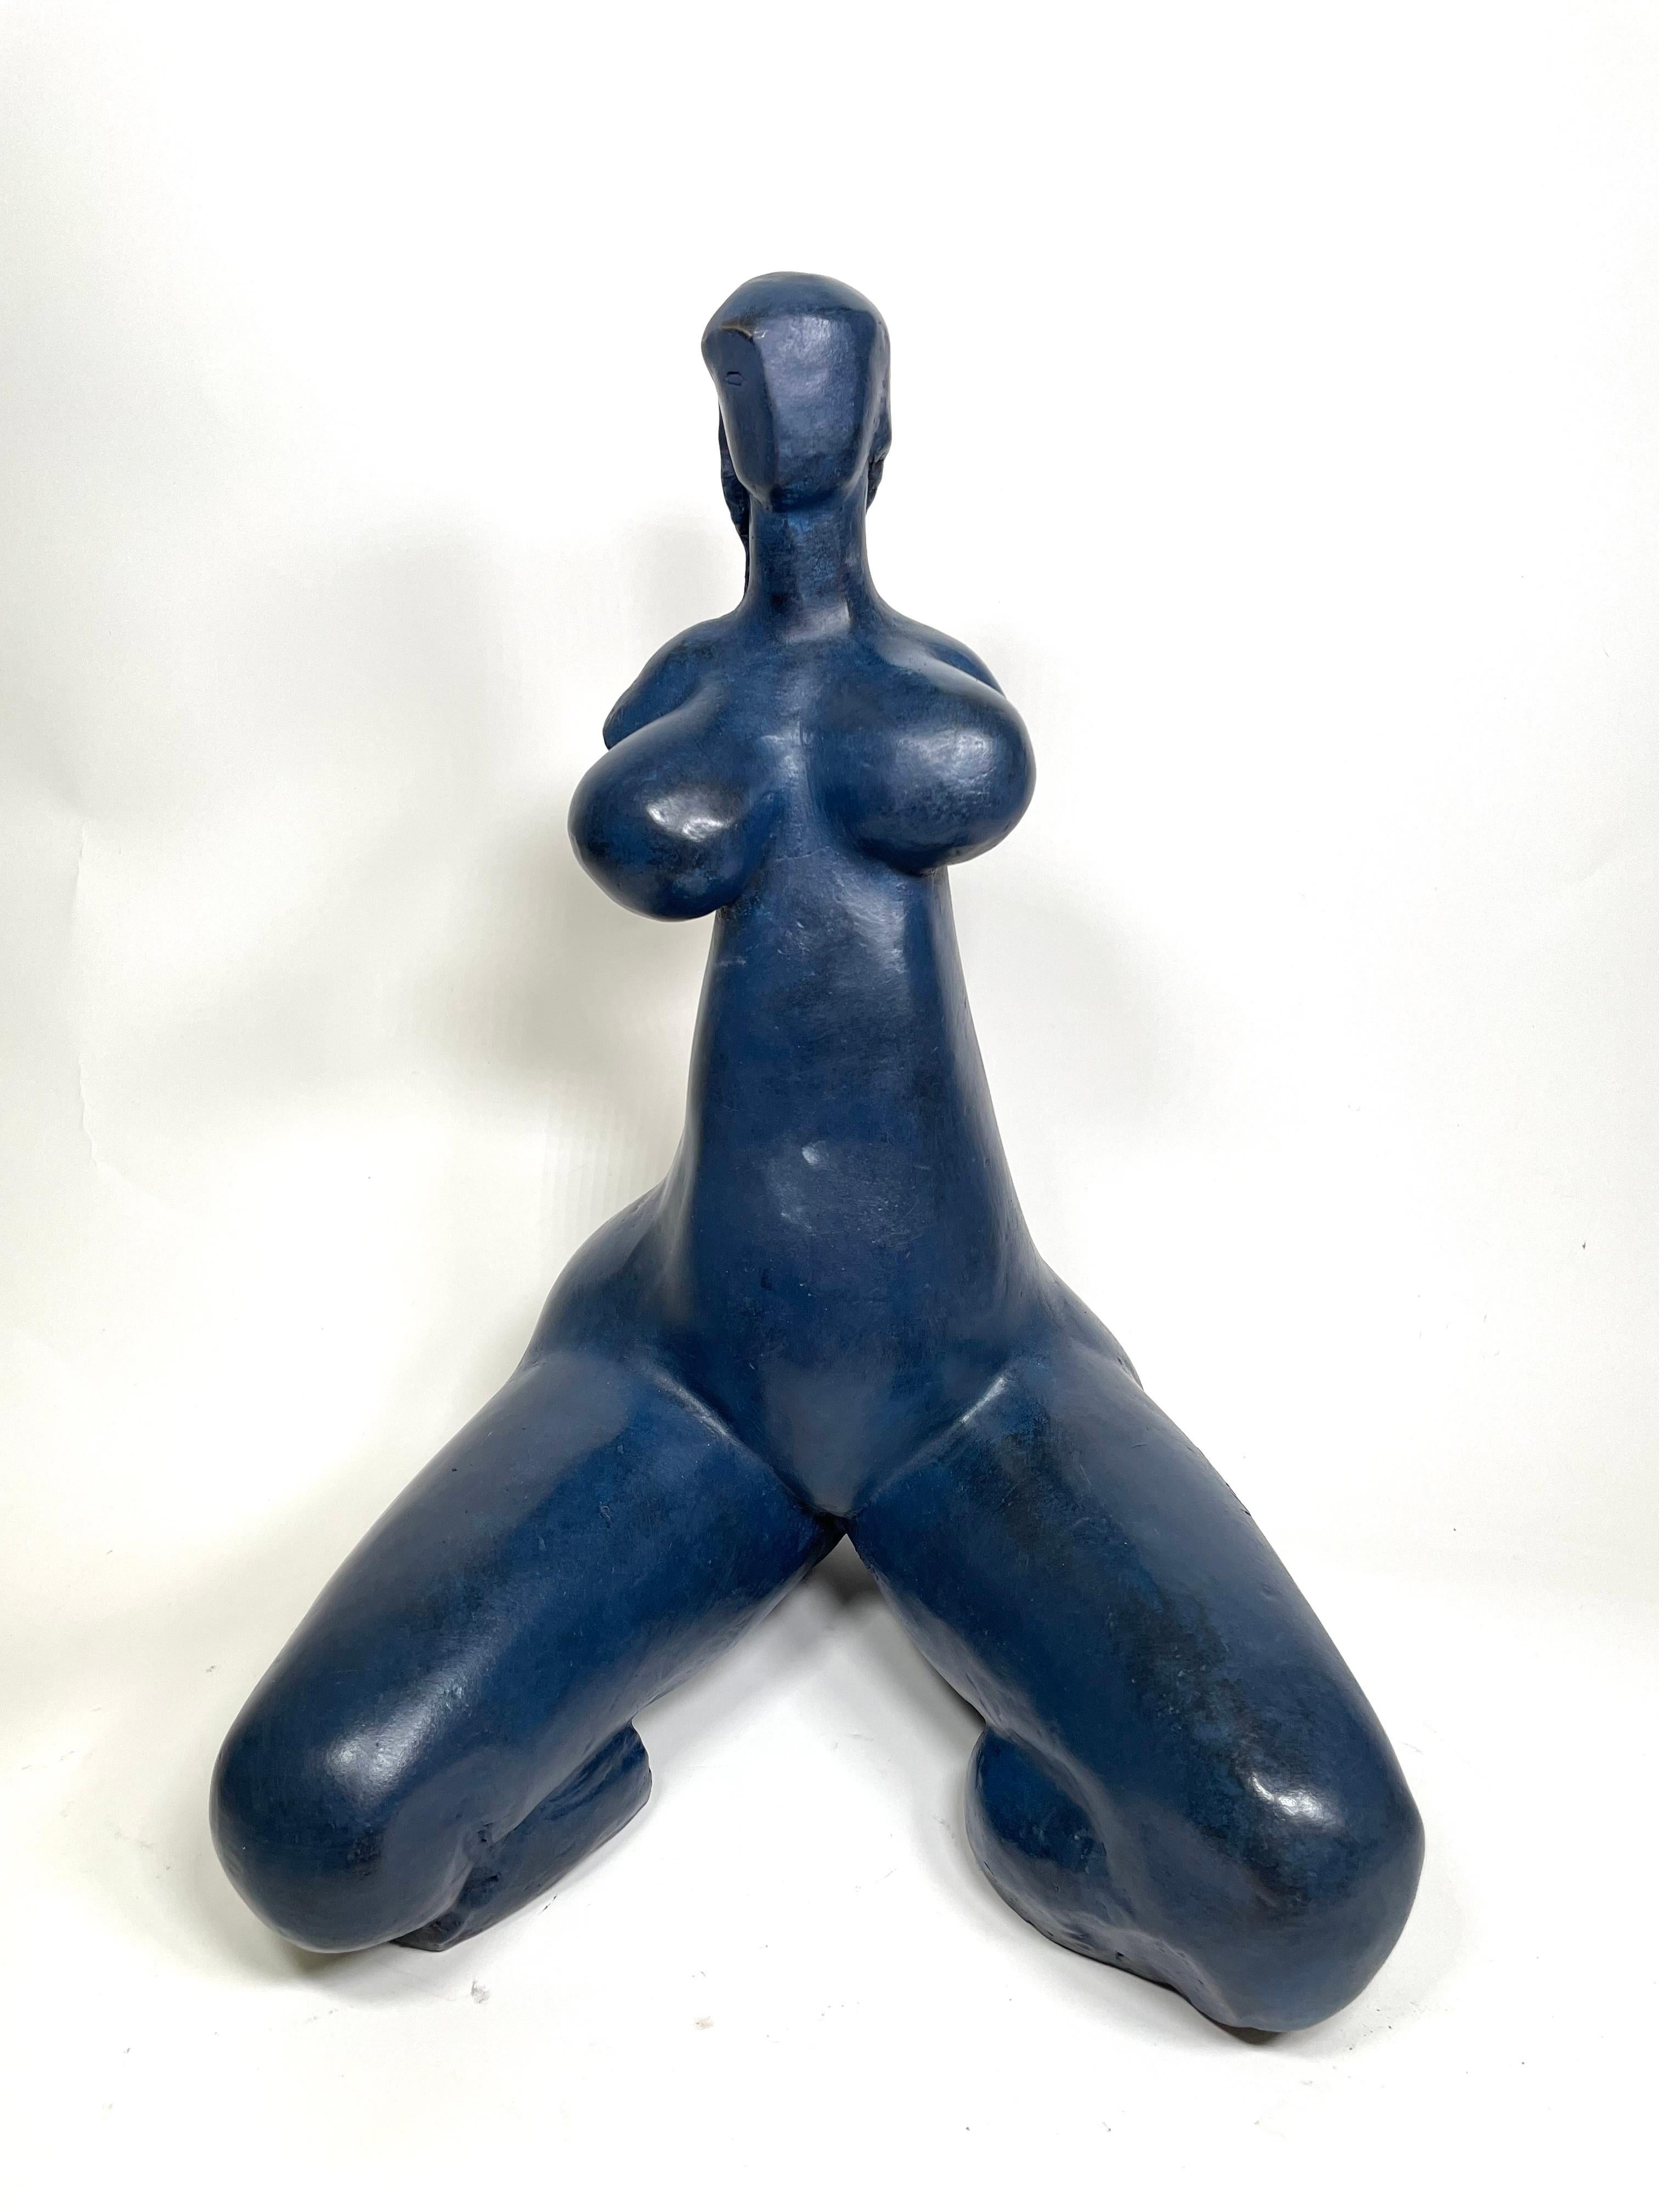 Antoniucci Volti Nude Sculpture - Germinal h cm 40 (blue patina) 